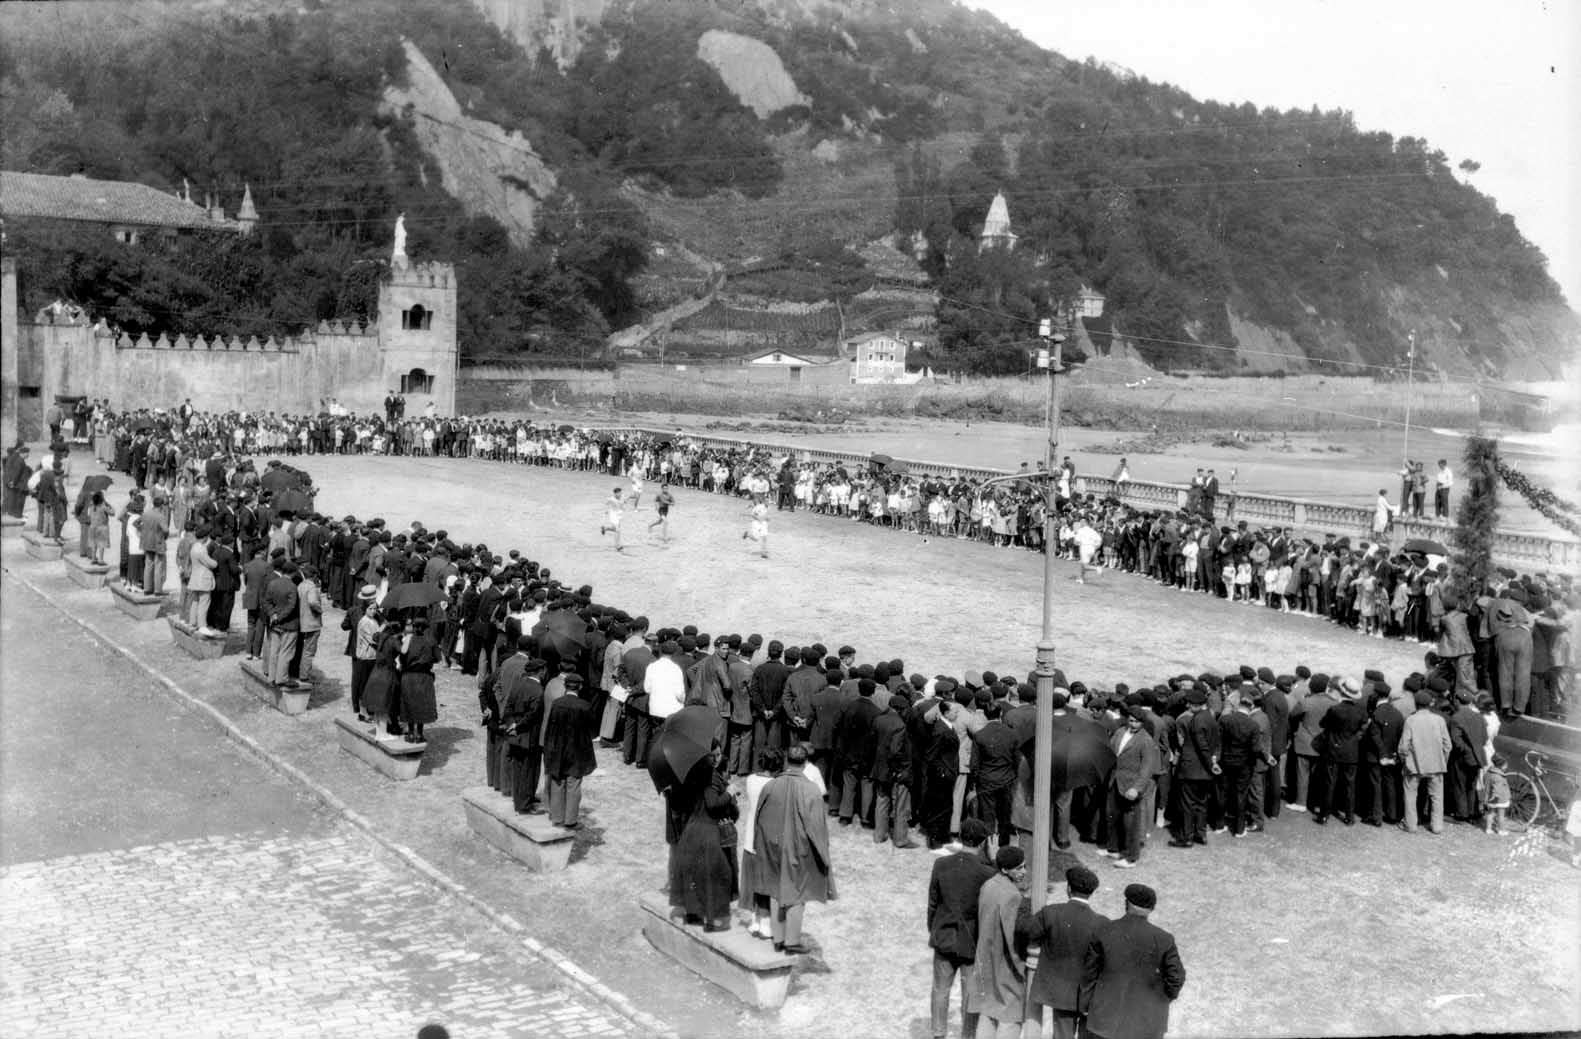 People watch a race in Zarautz, Spain in 1916.